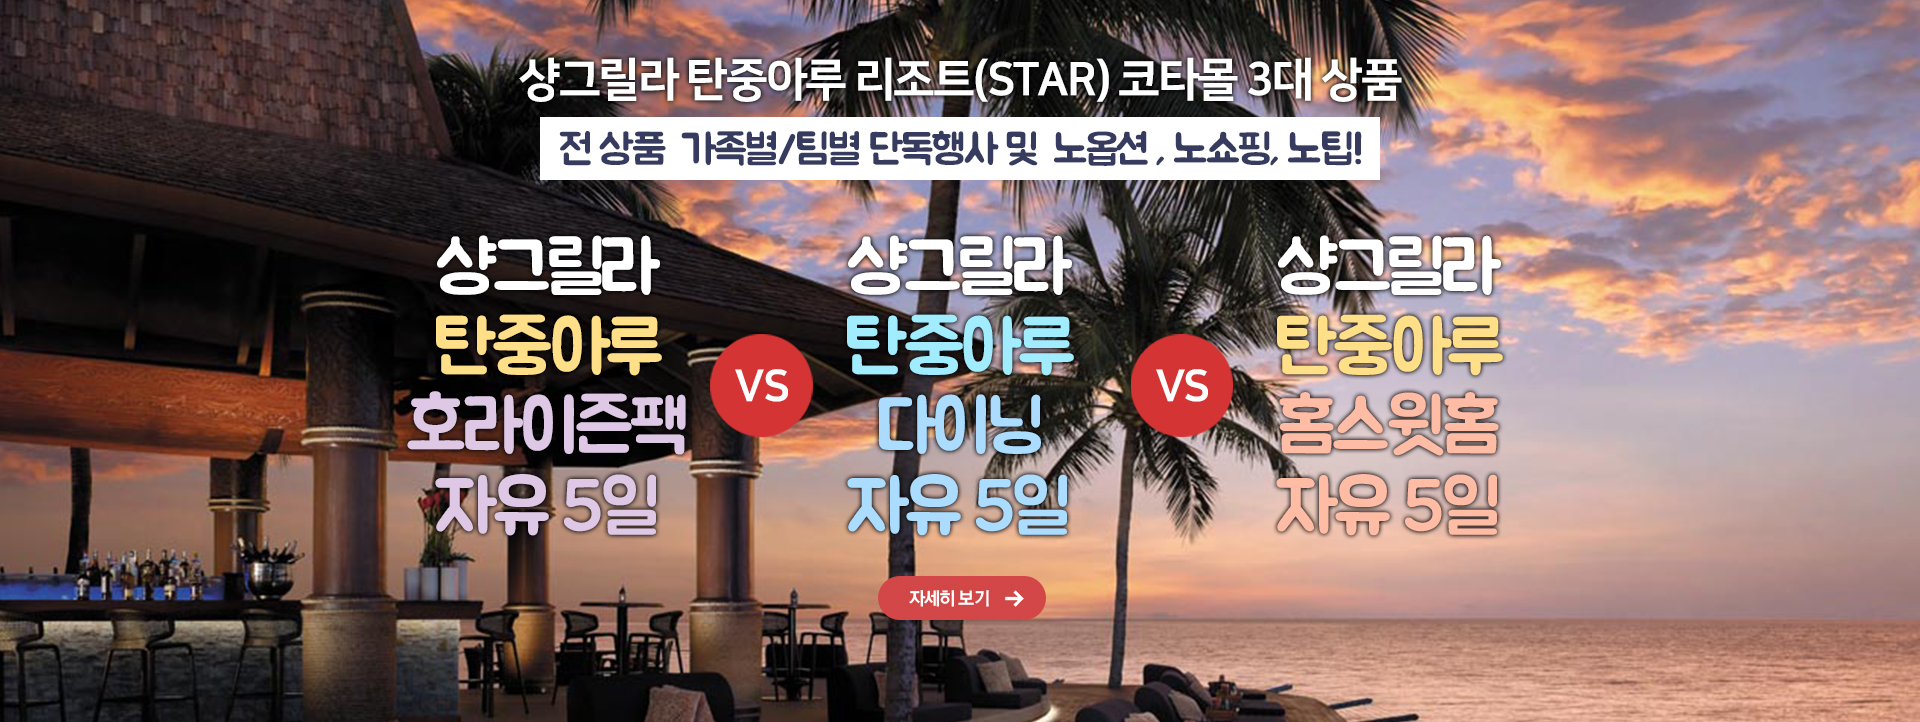 샹그릴라 탄중아루 리조트(STAR) 코타몰 3대 상품